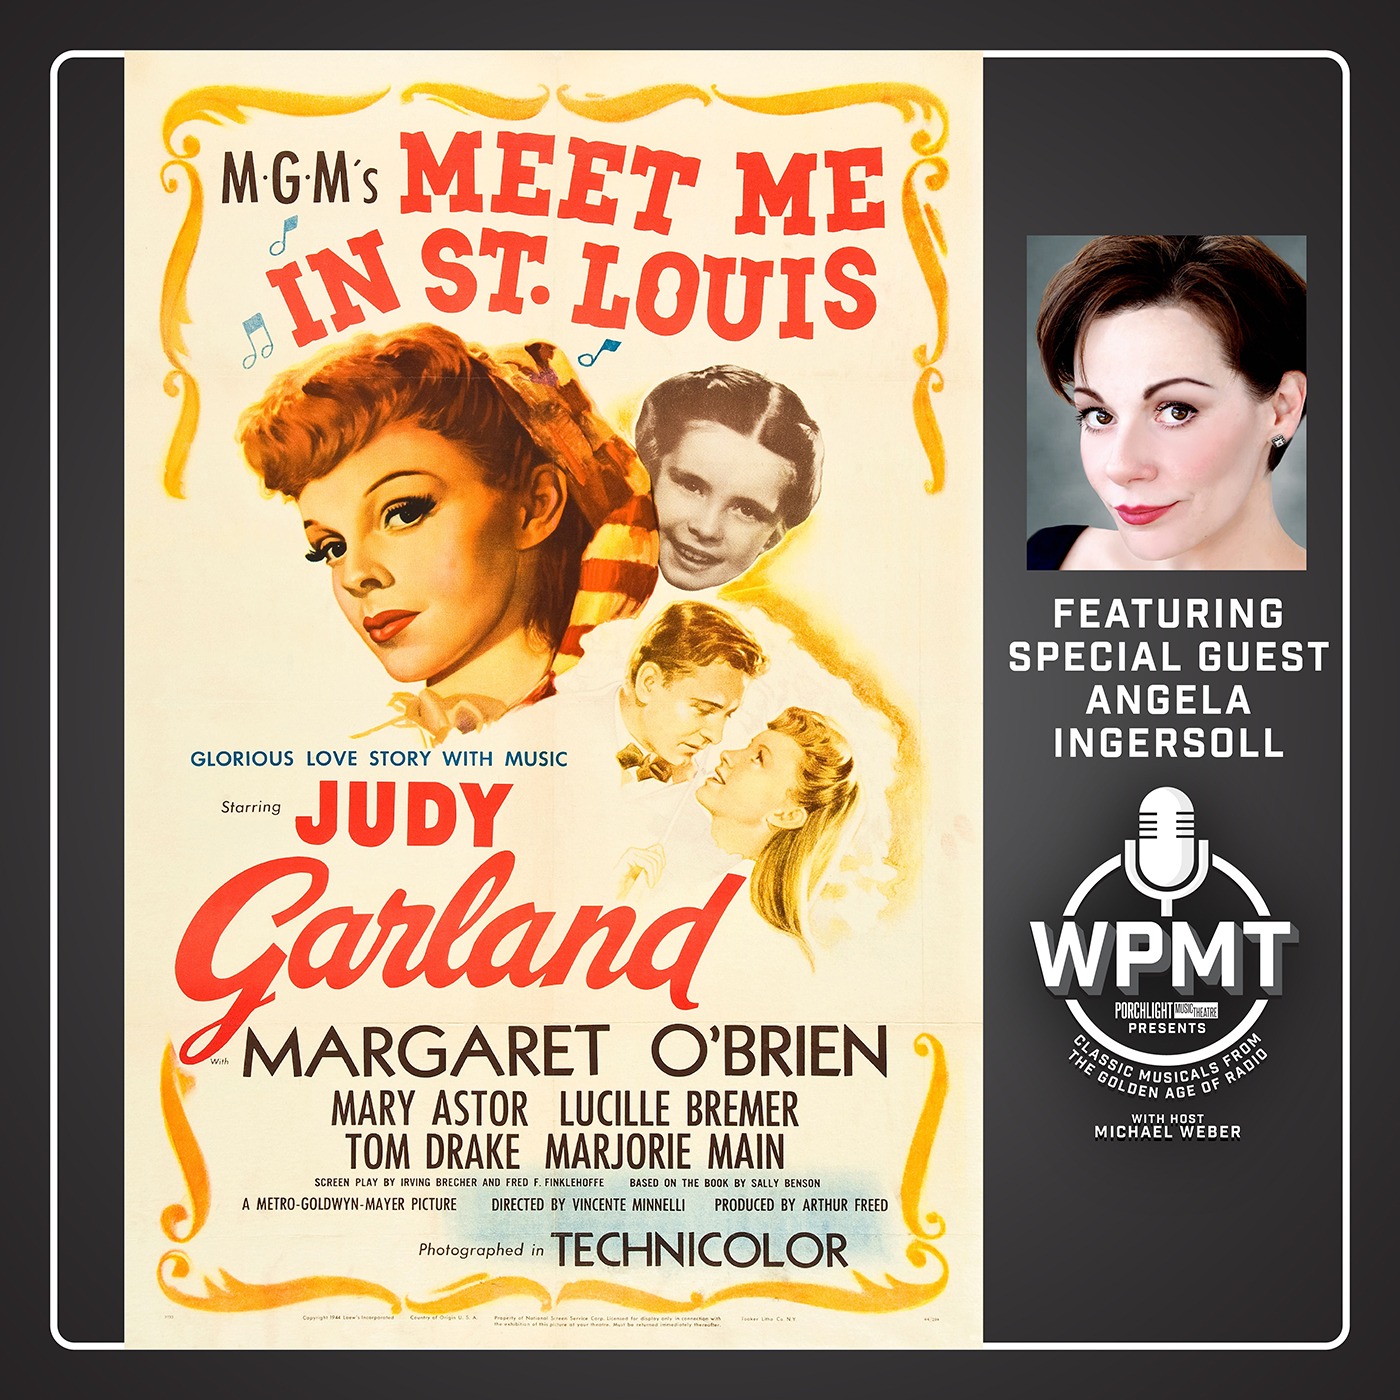 WPMT #24: Meet Me in St. Louis